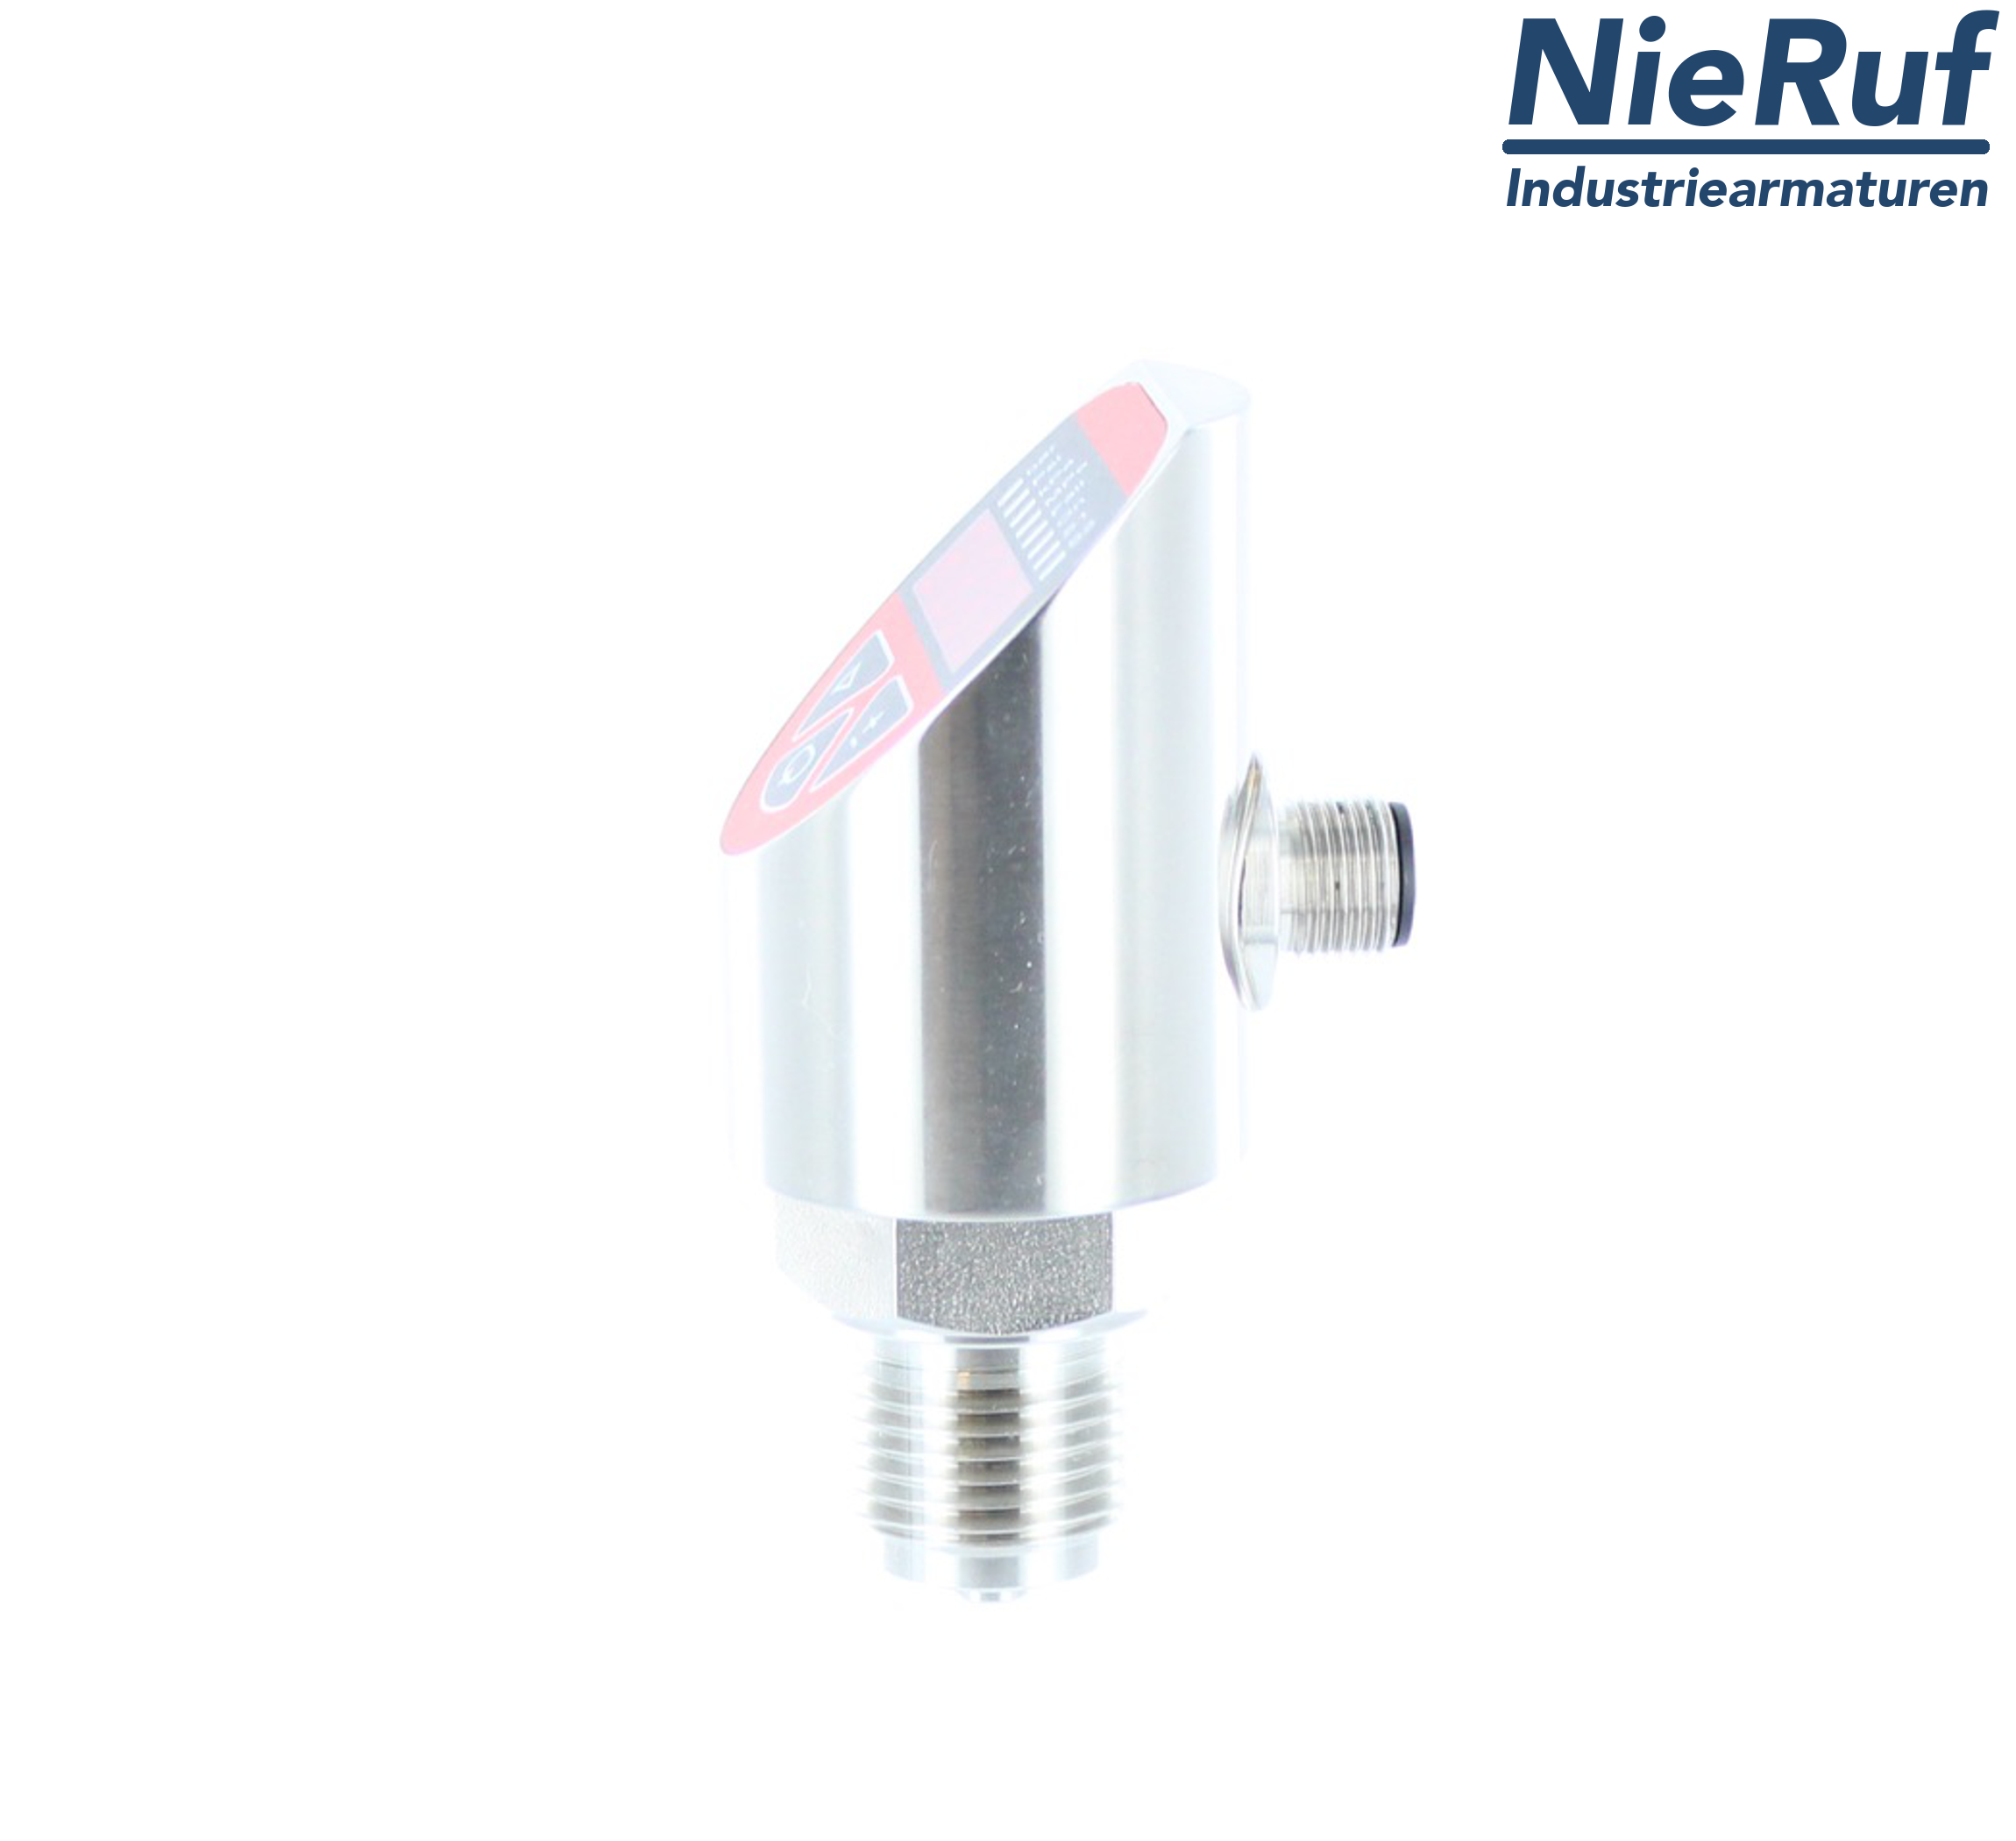 digital pressure sensor G 1/2" B IB 5-wire: 2xPNP, 1x4 - 20mA FPM 0,0 - 16,0 bar